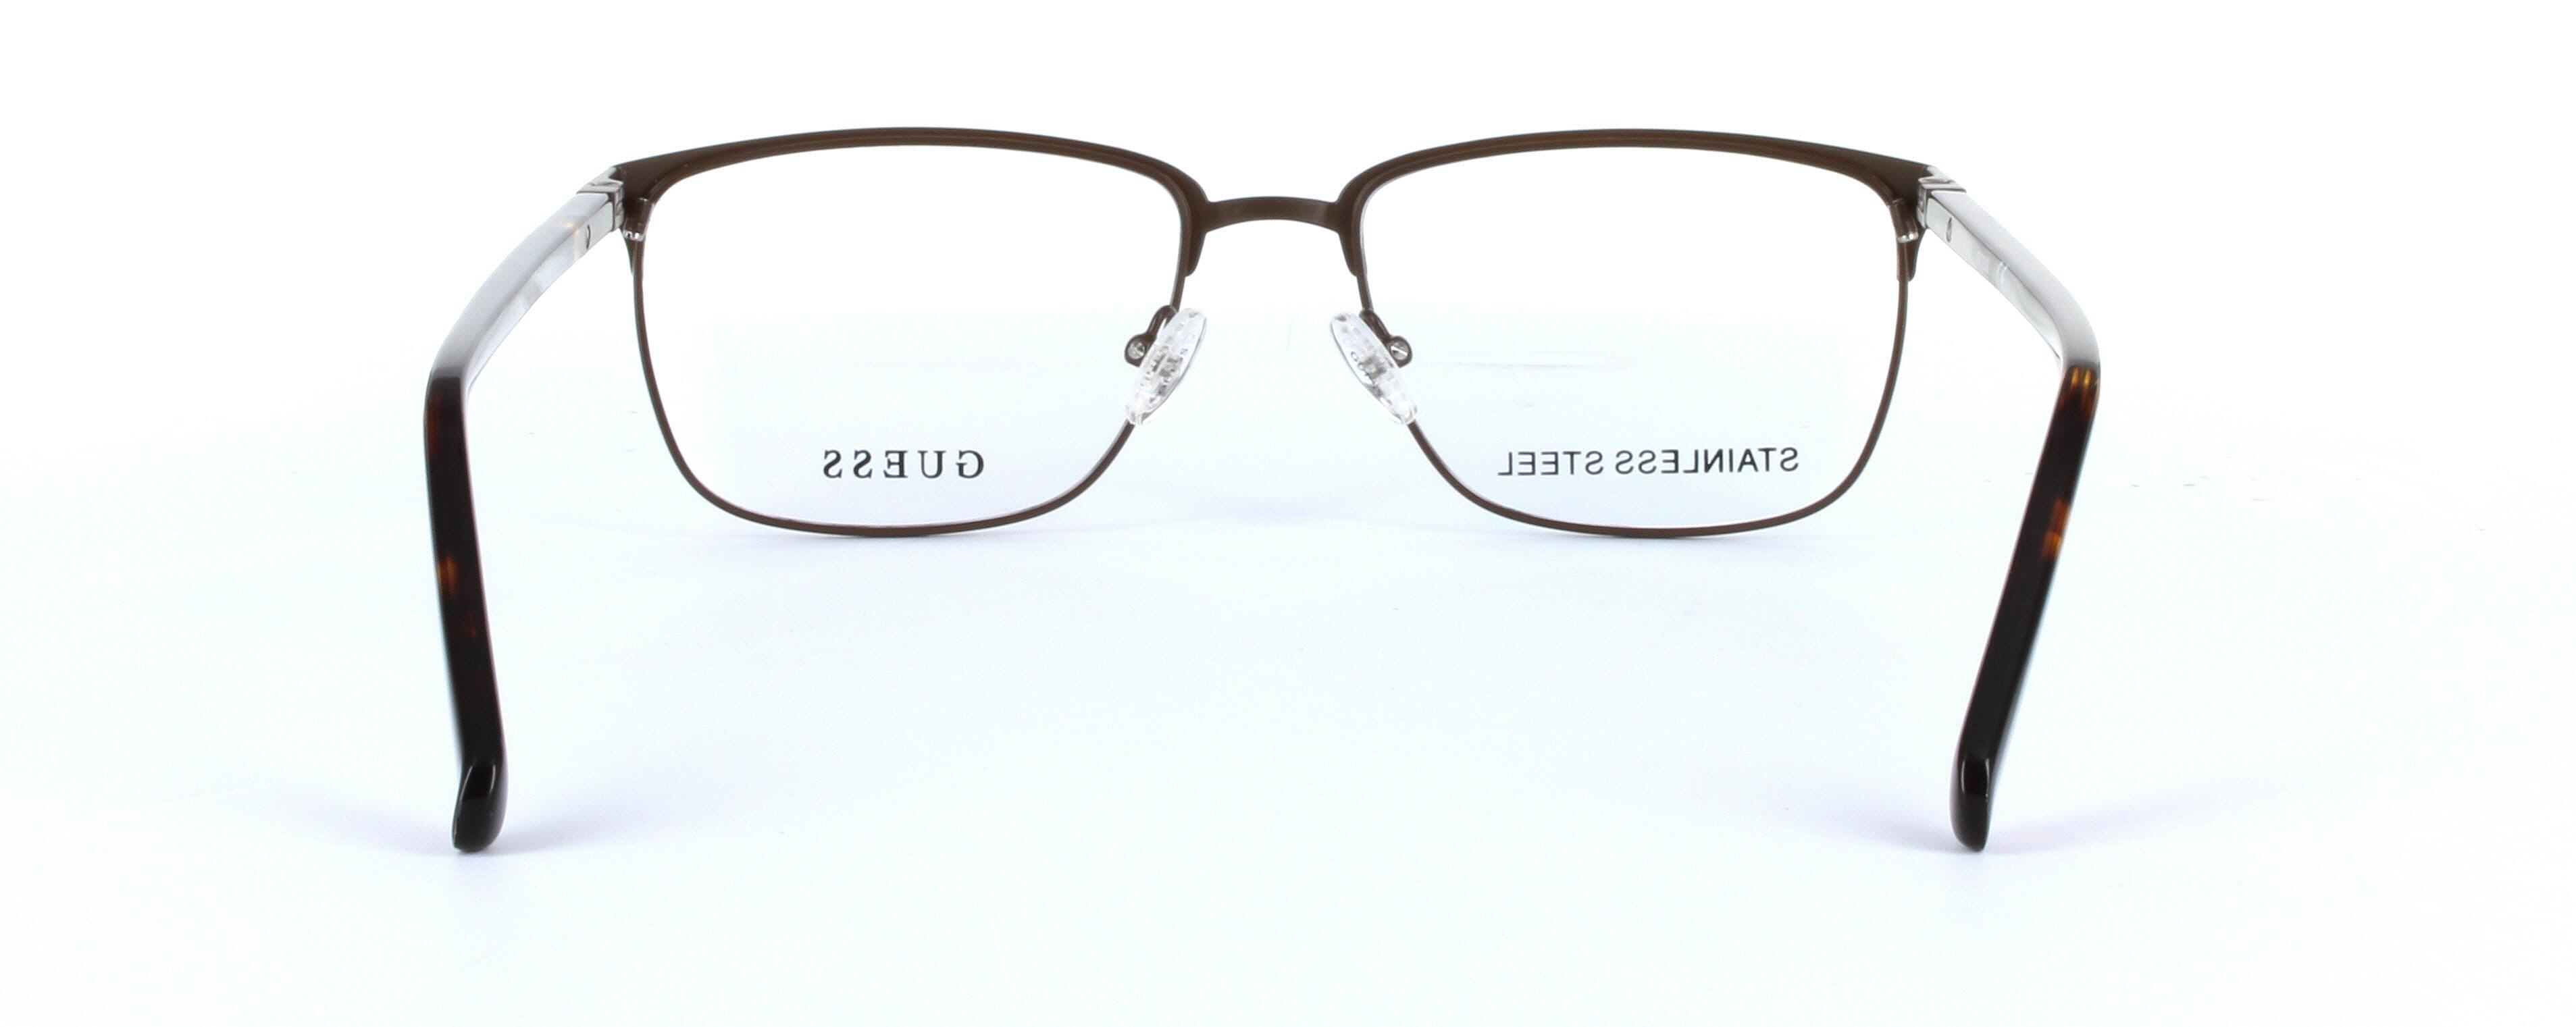 GUESS (GU1890-049) Brown Full Rim Oval Rectangular Metal Glasses - Image View 3